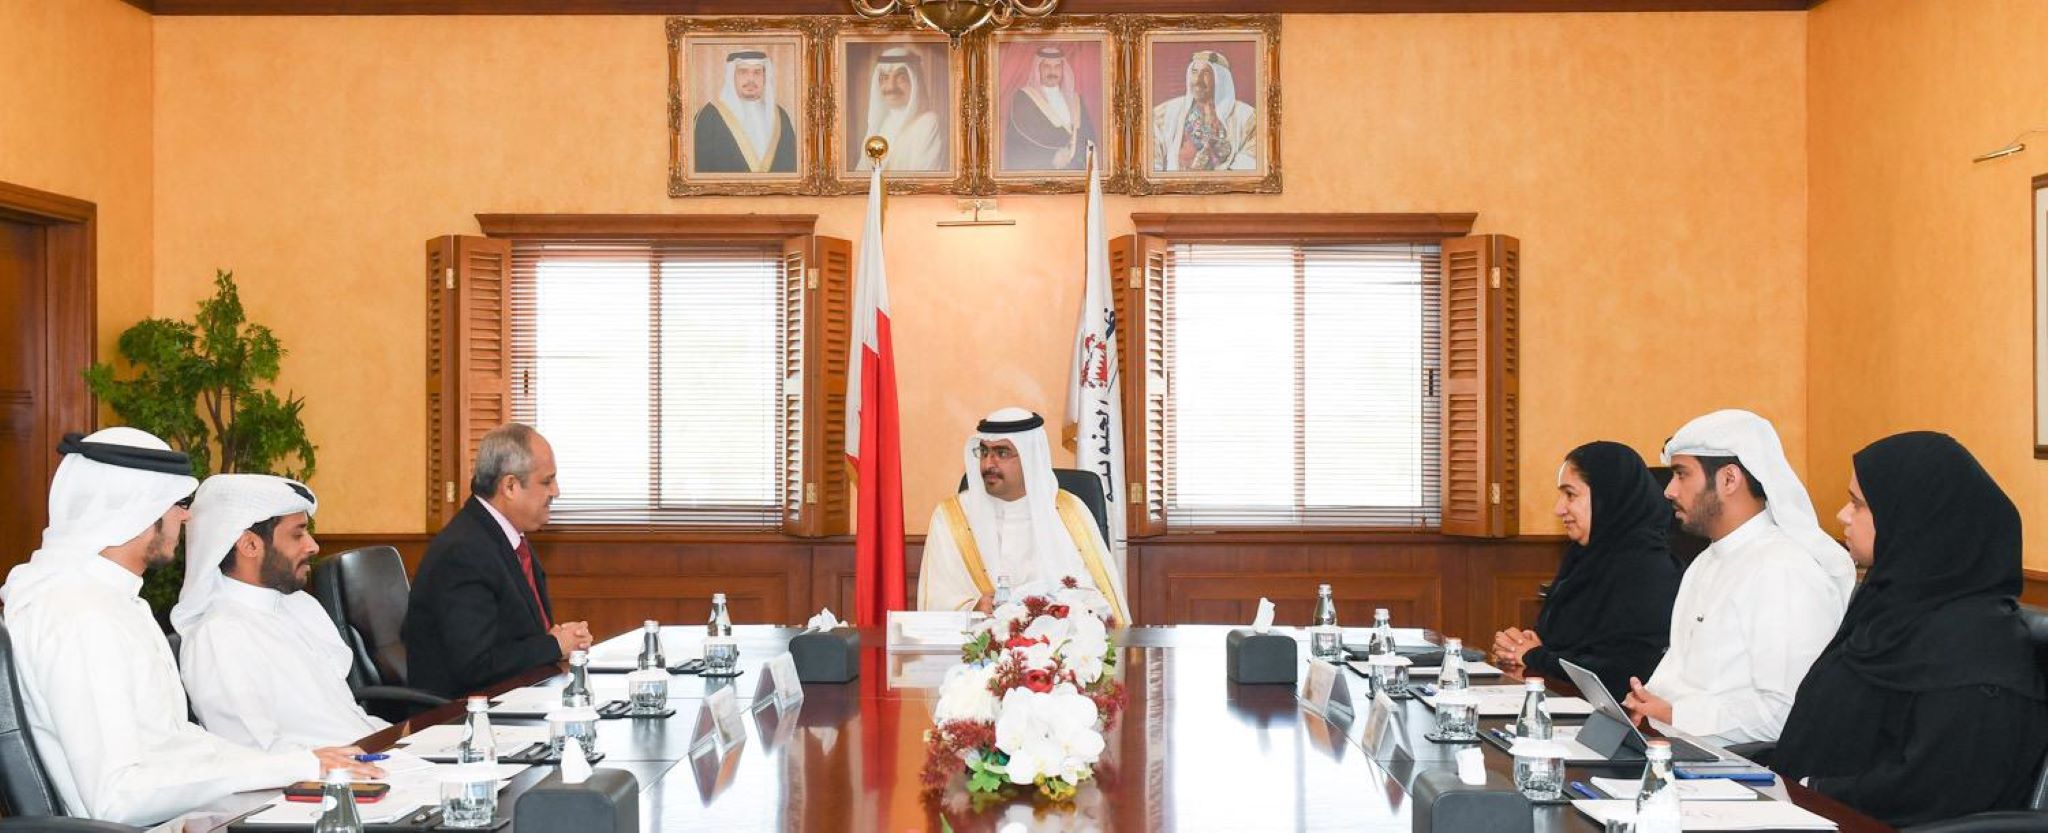 استقبل سمو الشيخ خليفة بن علي بن خليفة آل خليفة محافظ المحافظة الجنوبية الدكتور إبراهيم جناحي الرئيس التنفيذي لصندوق العمل "تمكين"، وذلك بحضور عدد من المسؤولين.